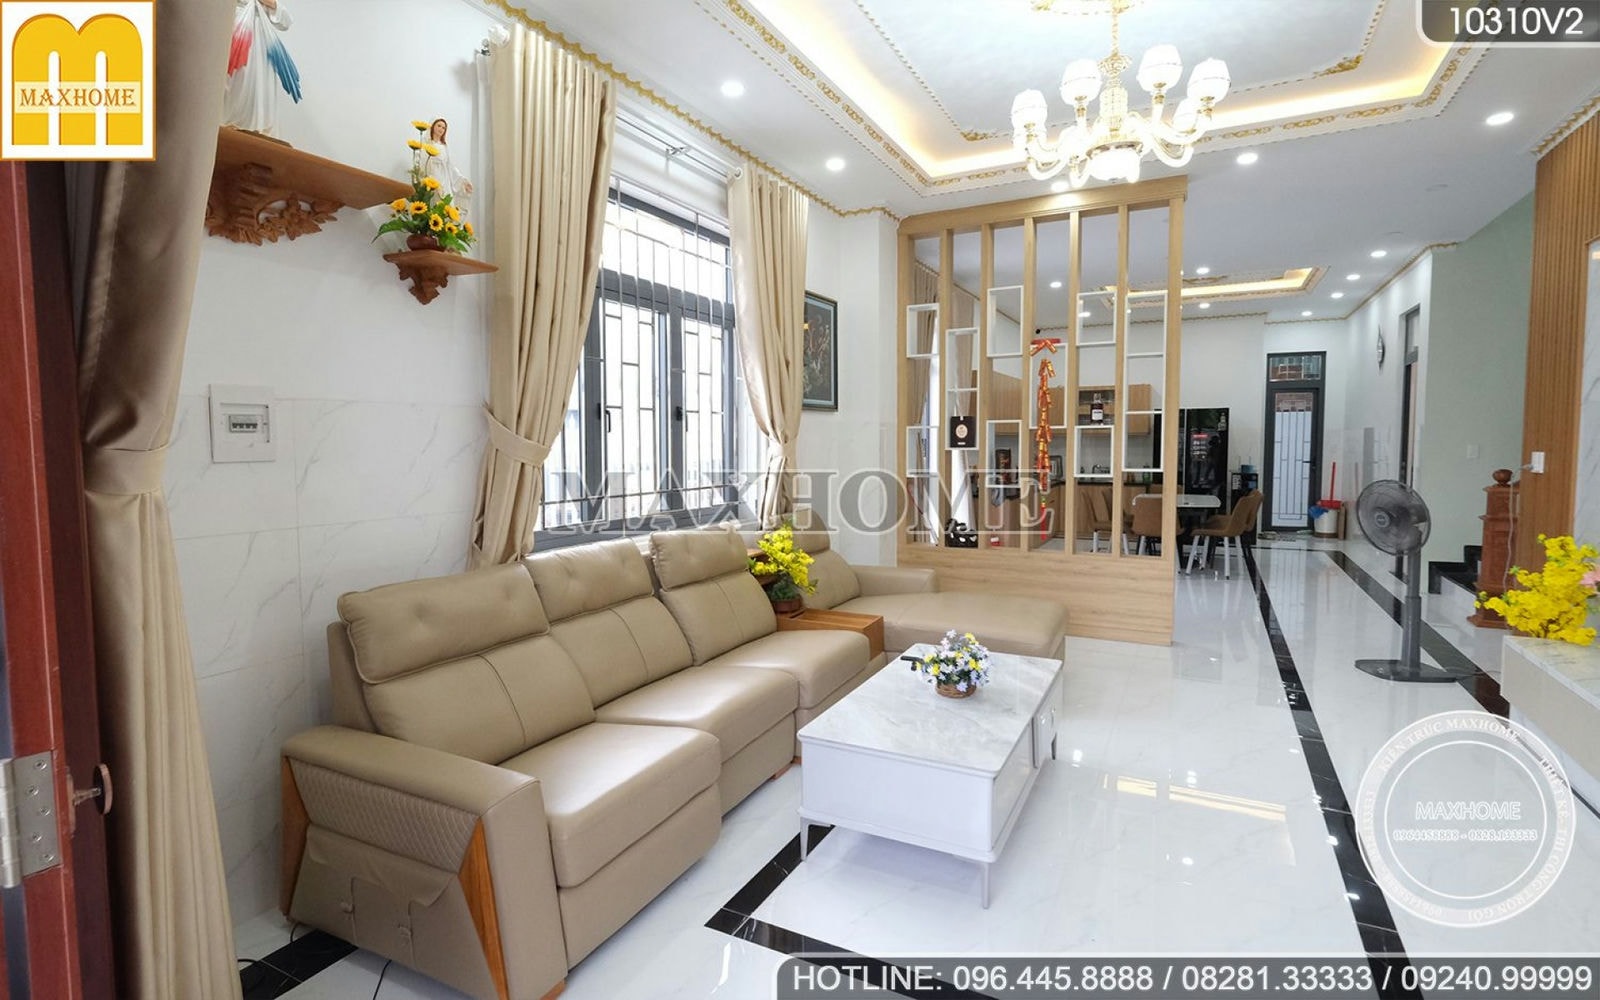 Quá đẹp! Trọn bộ nội thất hiện đại, sang trọng giá chỉ từ 210 triệu tại Vũng Tàu